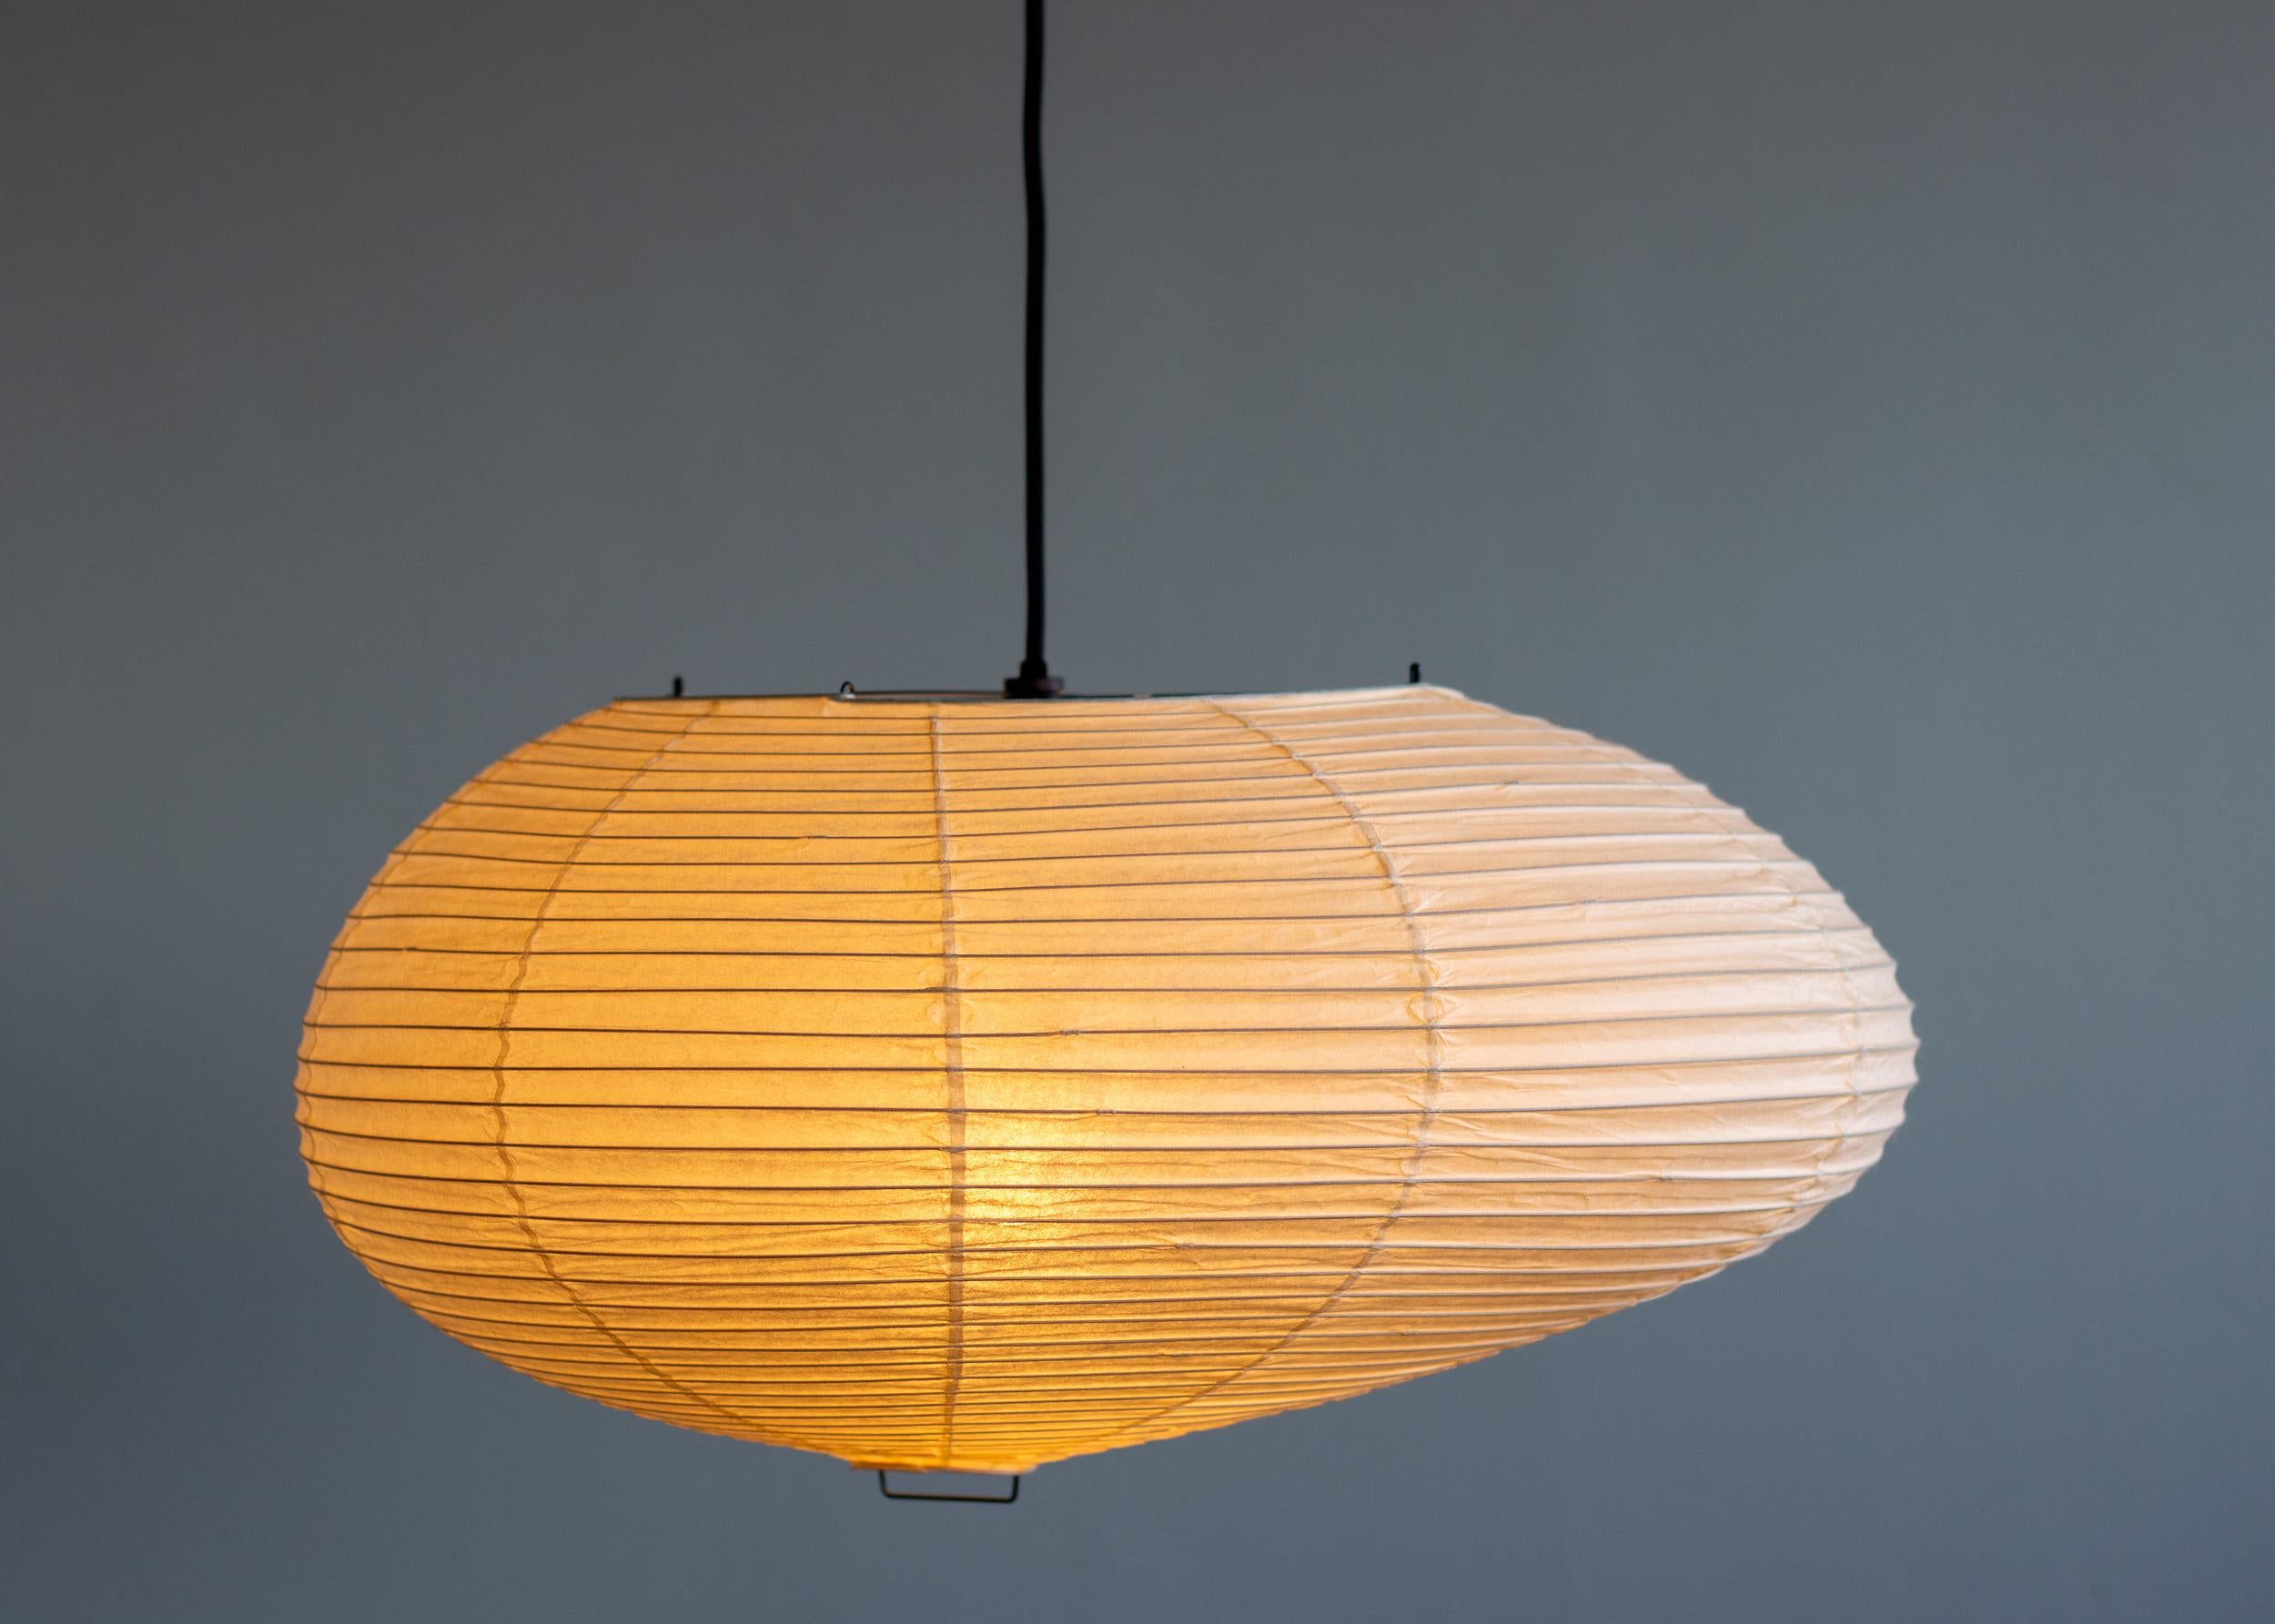 Pendentif Akari 16A conçu par Isamu Noguchi, 1951. Fabriqué par Ozeki & Co. au Japon. 
Structure en bambou recouverte de papier washi. Câblée aux normes américaines. 
Version récente, nouvelle corde et voilure du Musée Noguchi. 
Ce luminaire est